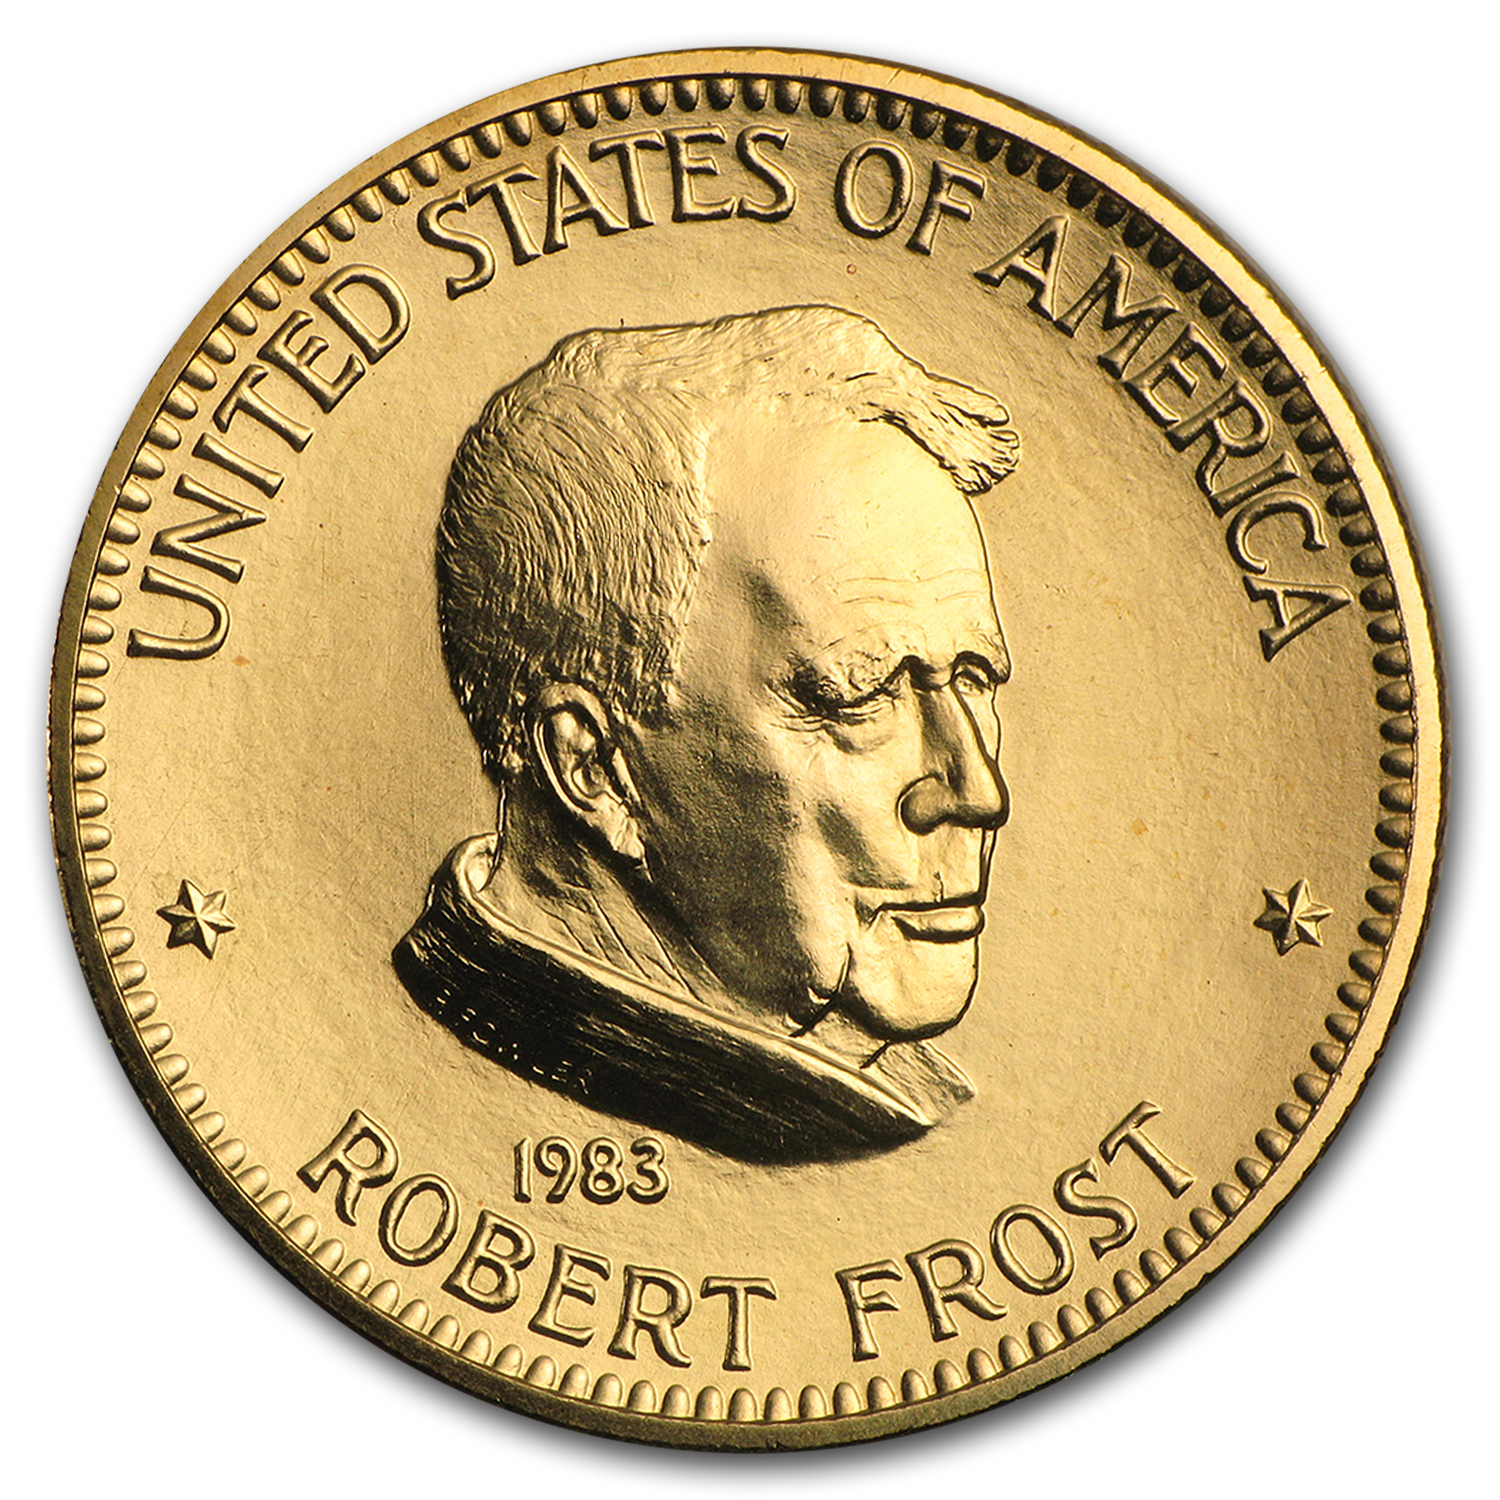 Buy U.S. Mint 1 oz Gold Commemorative Arts Medal Robert Frost